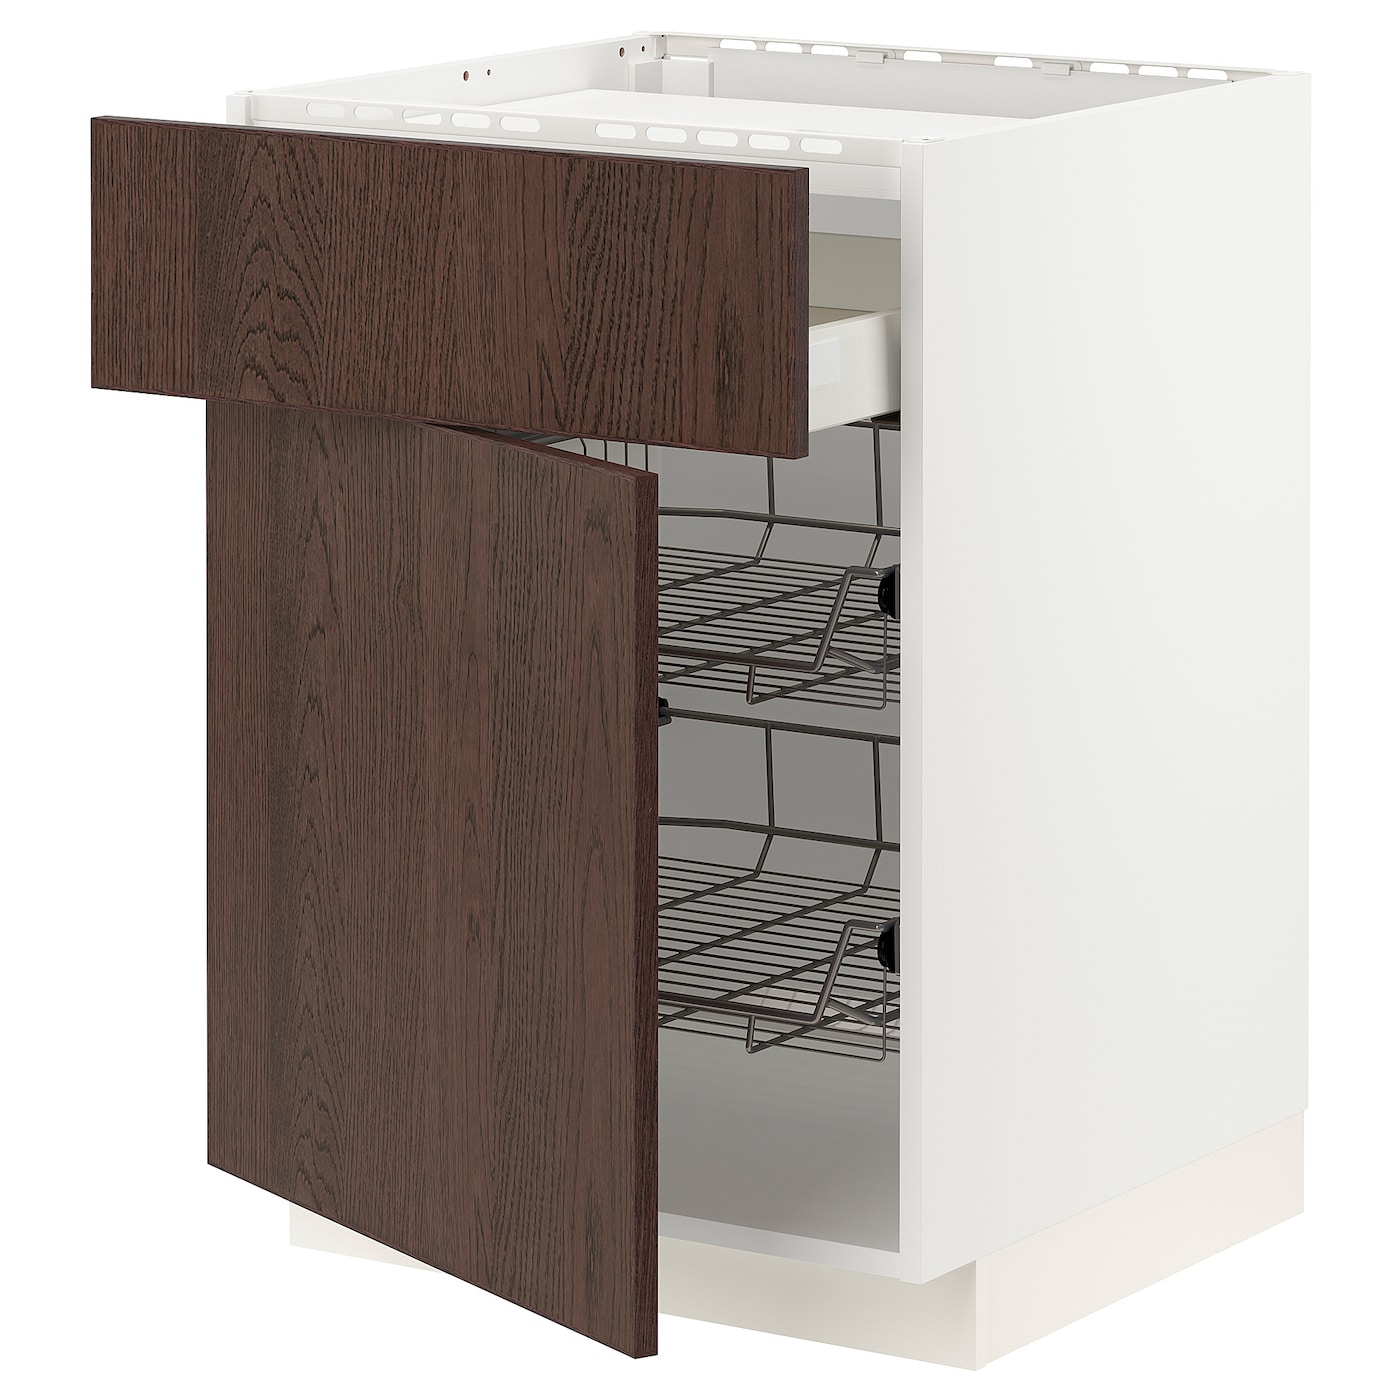 Напольный шкаф - IKEA METOD MAXIMERA, 88x62x60см, белый/темно-коричневый, МЕТОД МАКСИМЕРА ИКЕА